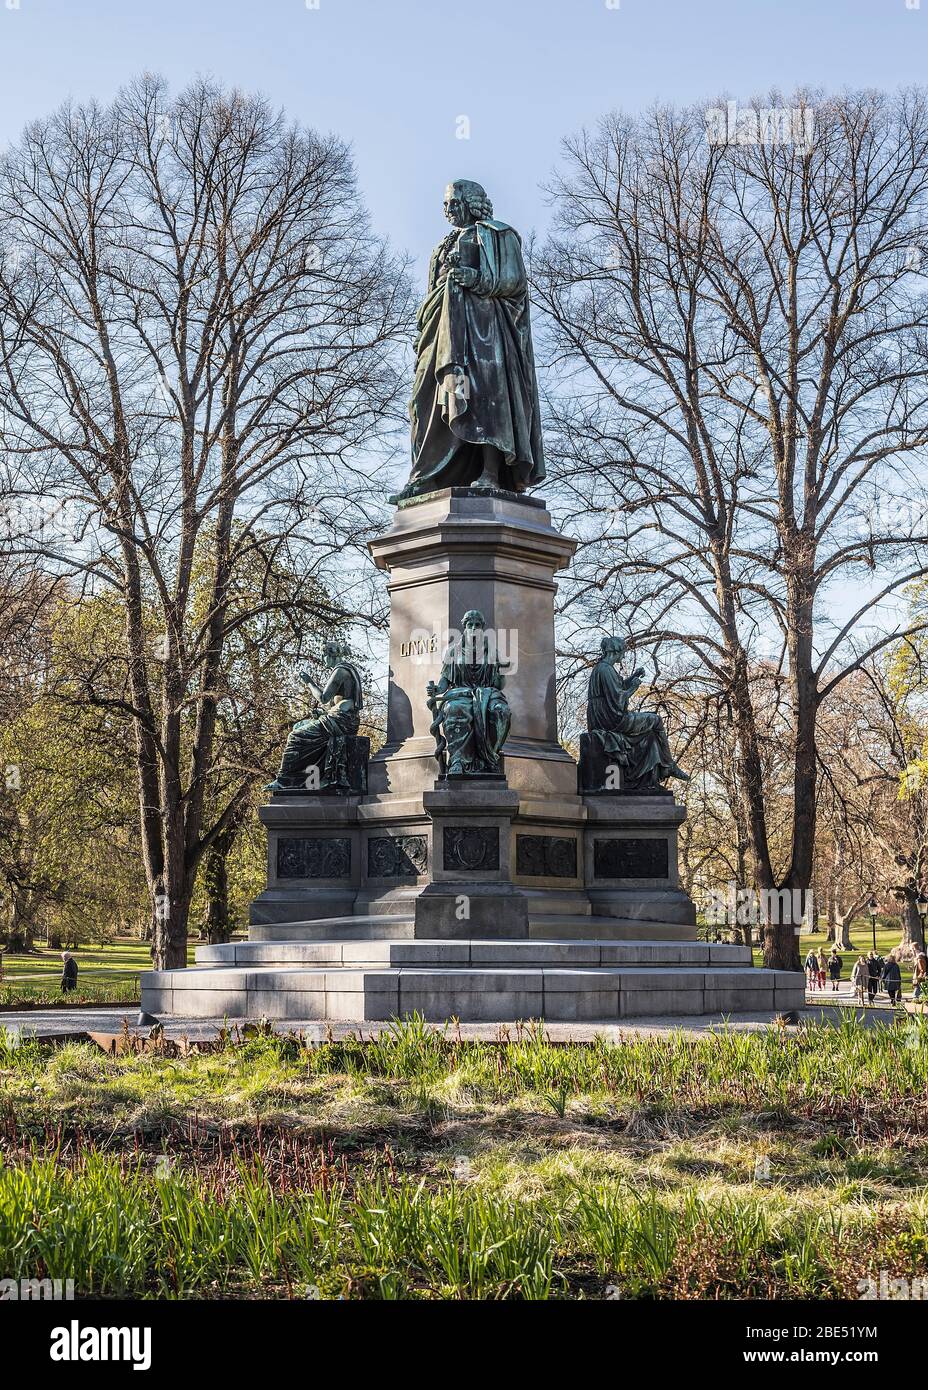 Denkmal für Carl Linnaeus für den schwedischen Naturforscher, Botaniker, Zoologen, Mineralogen und Arzt. Stockholm. Schweden Stockfoto